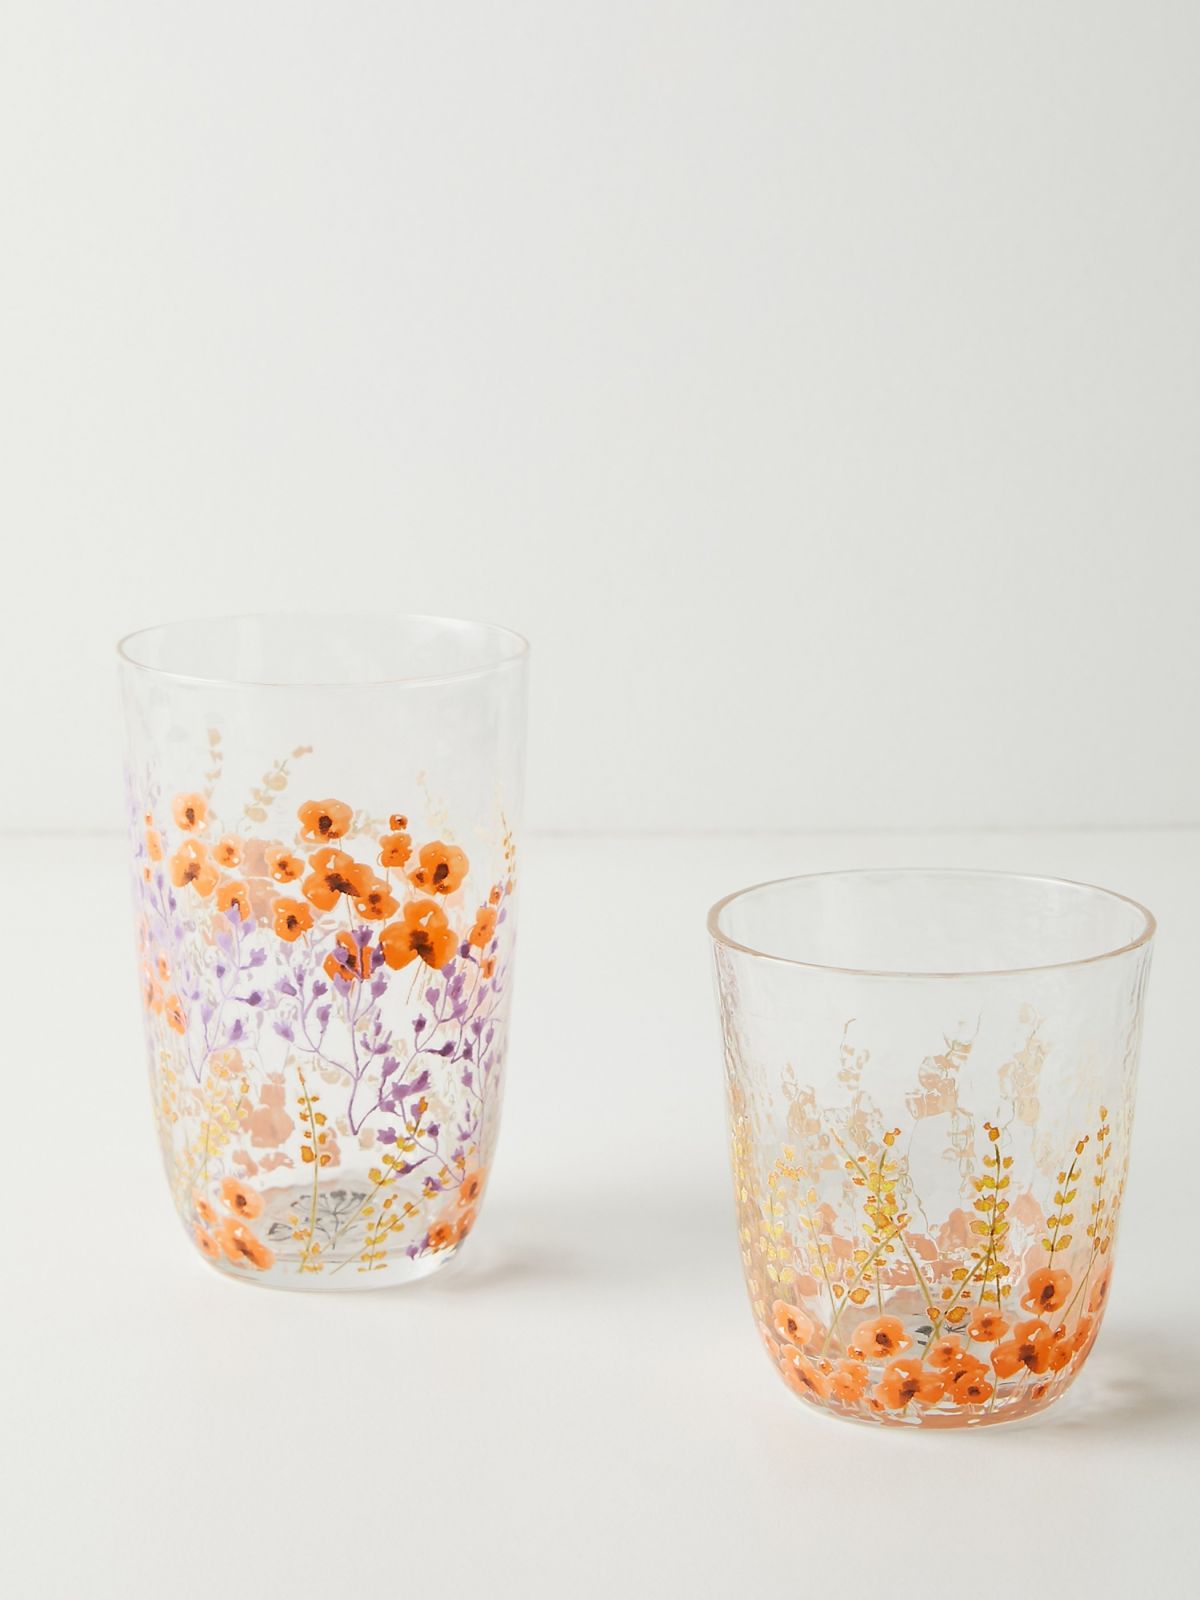  כוס זכוכית בהדפס פרחים Clemence של ANTHROPOLOGIE